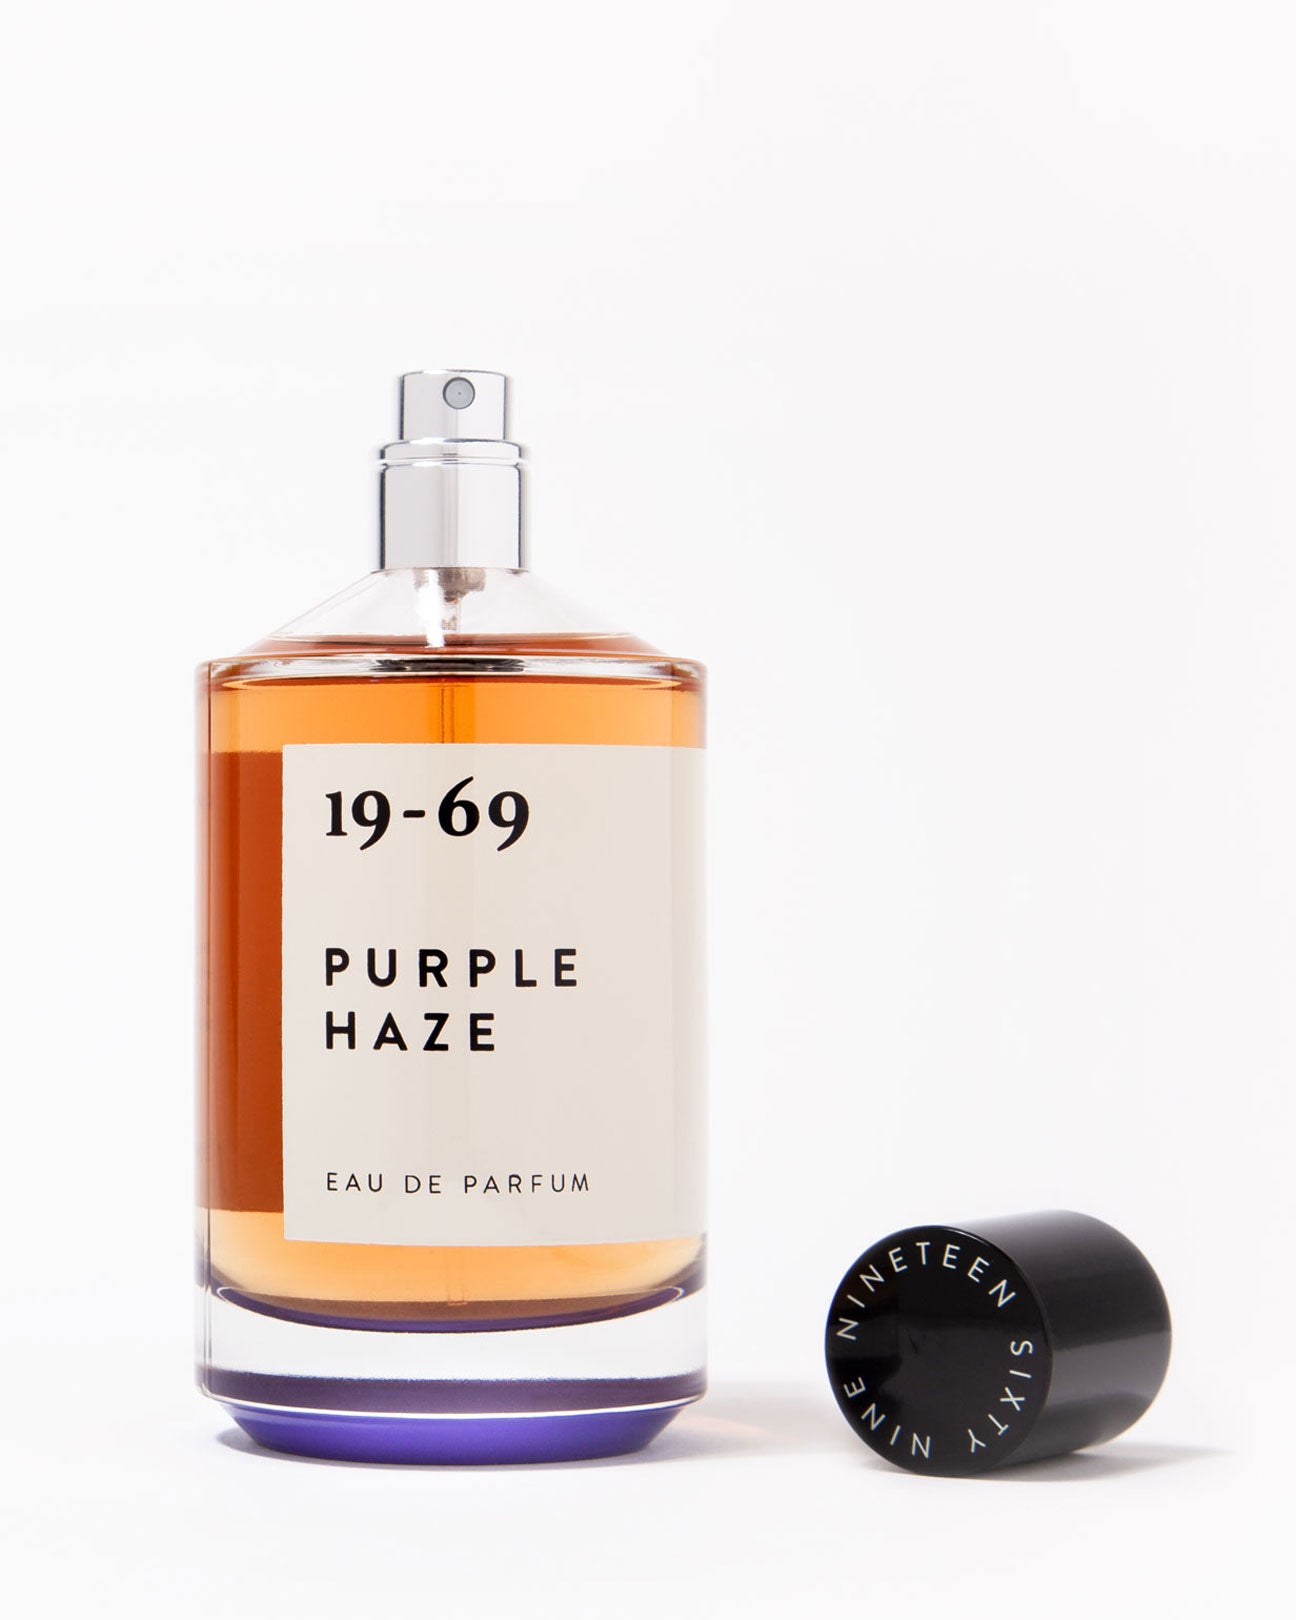 19-69 Eau De Parfum 30ml. in Purple Haze available at Lahn.shop